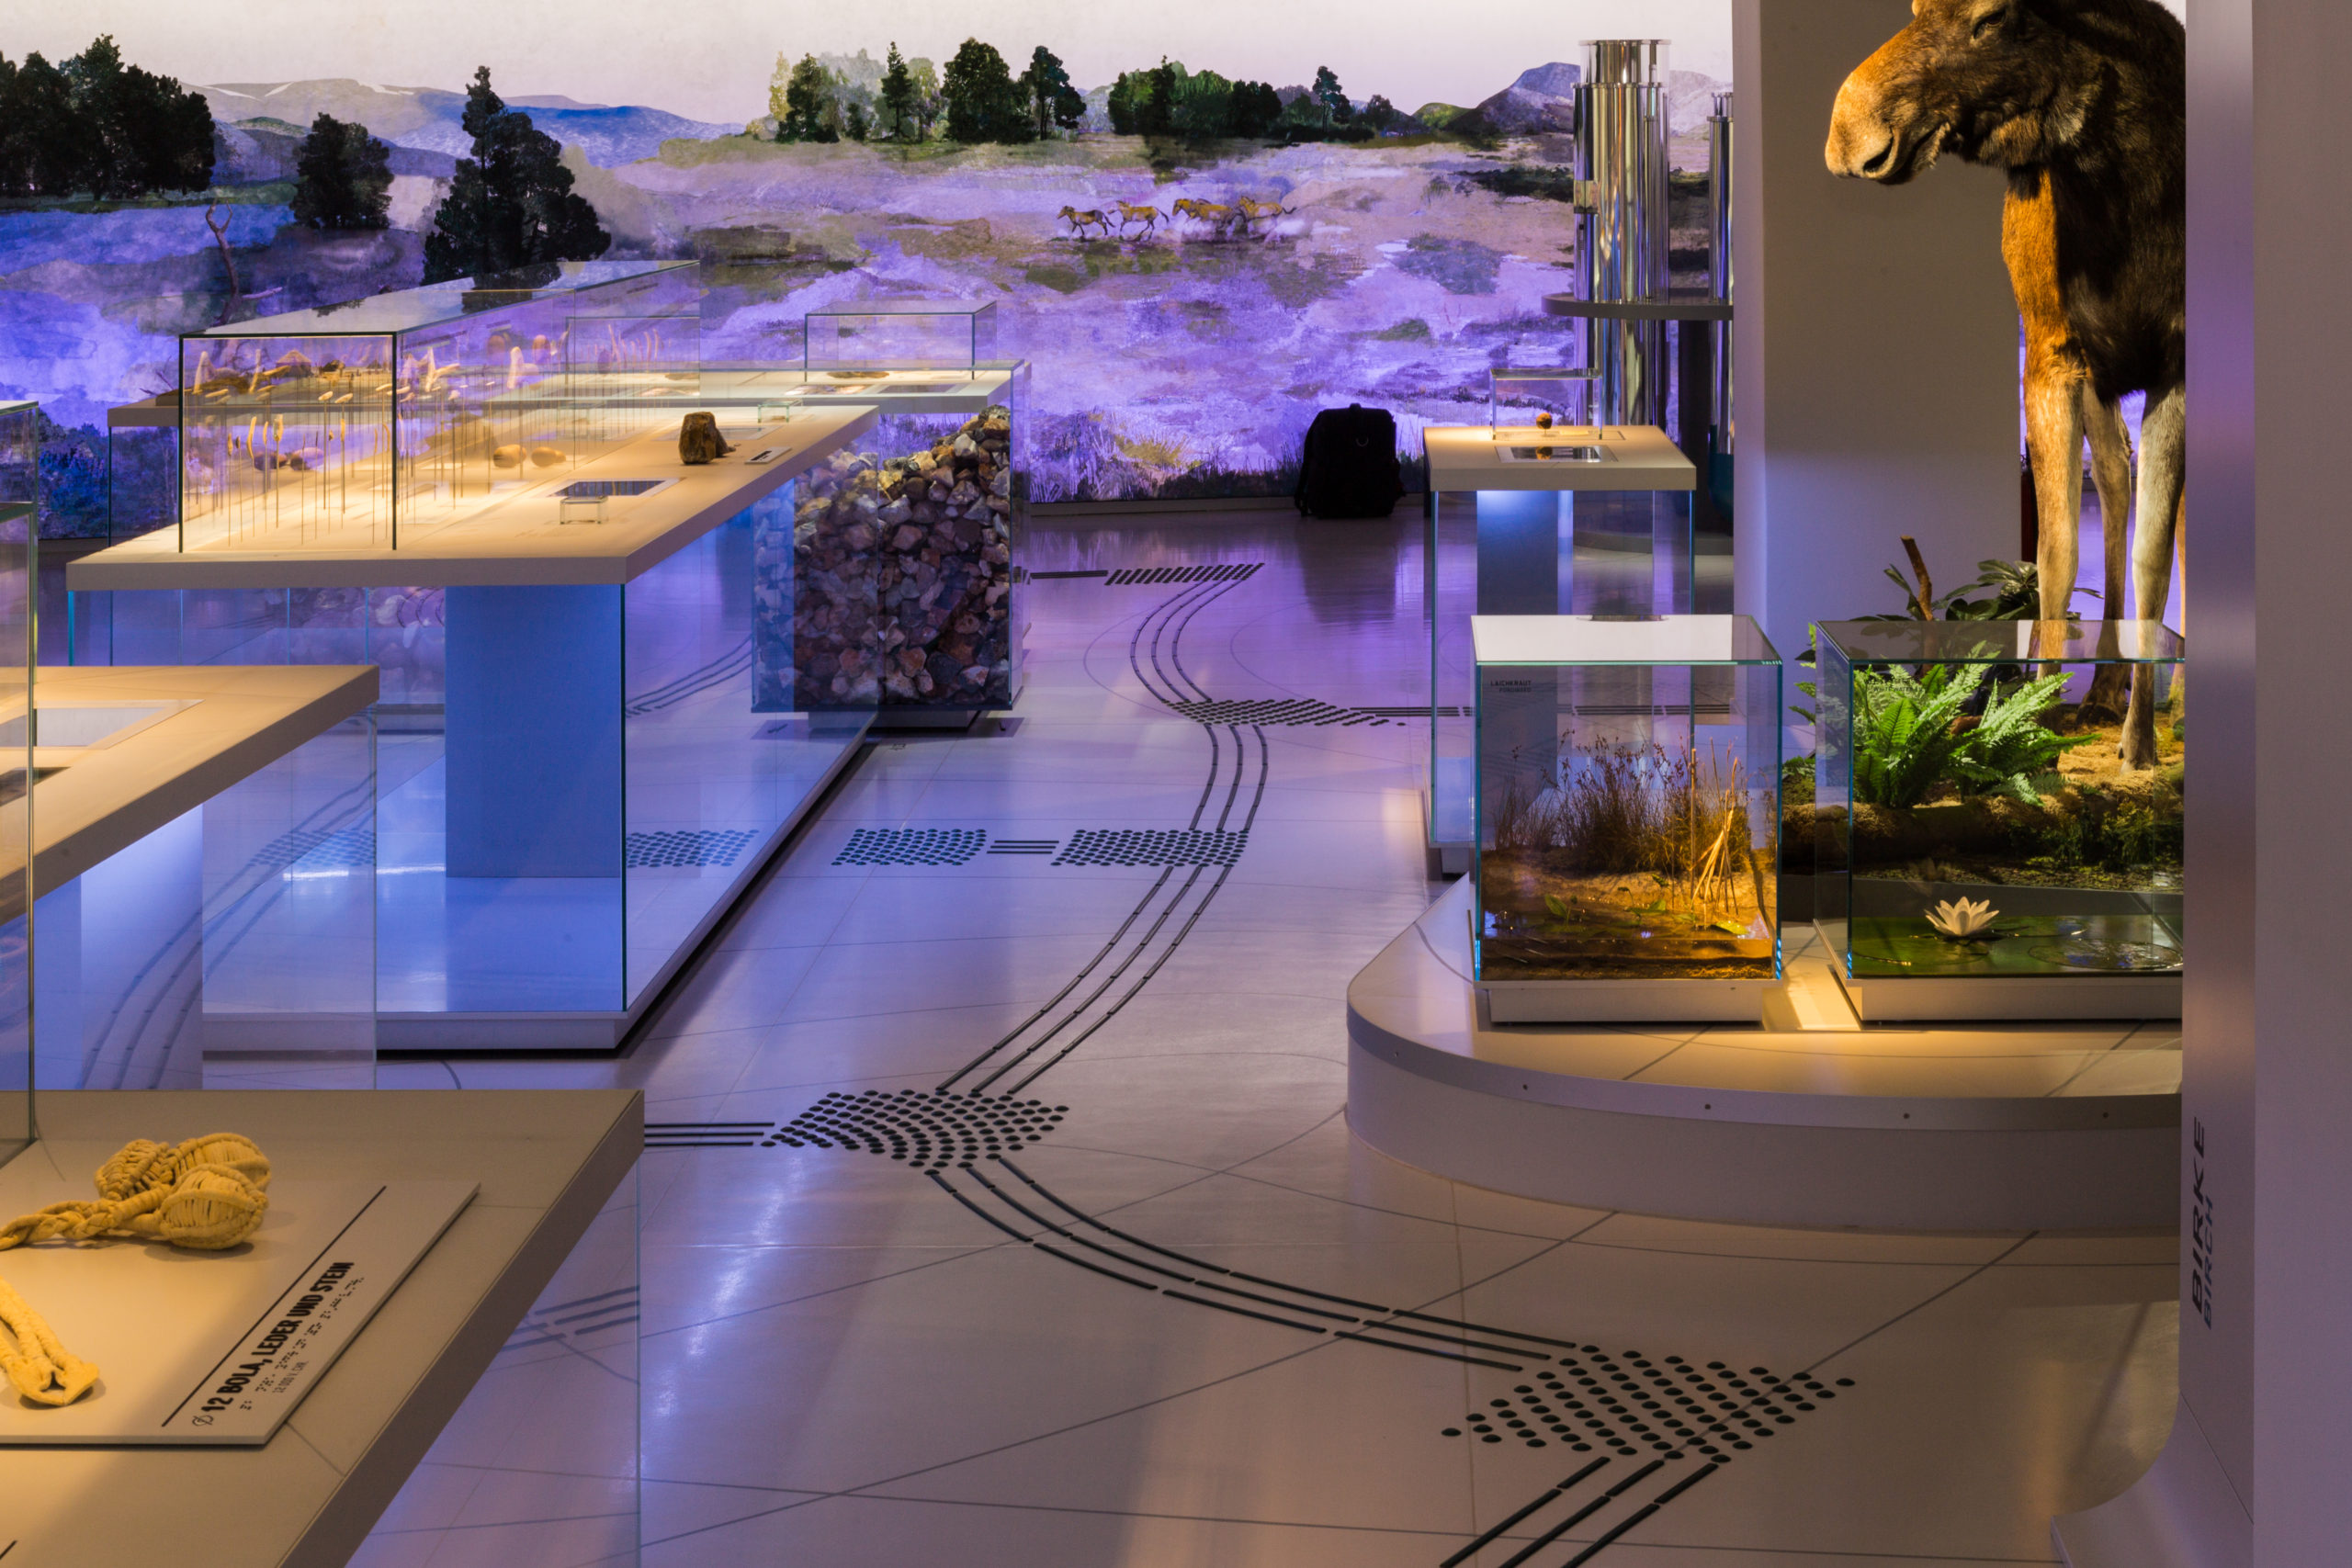 Ein Ausstellungsraum. Rechts und links stehen Vitrinen mit Ausstellungsstücken: Pflanzen, Knochen etc. Auf dem Boden befinden sich die schwarzen Linien eines Leitsystems. An der Wand am Ende des Raums ist eine Landschaftsmalerei abgebildet.